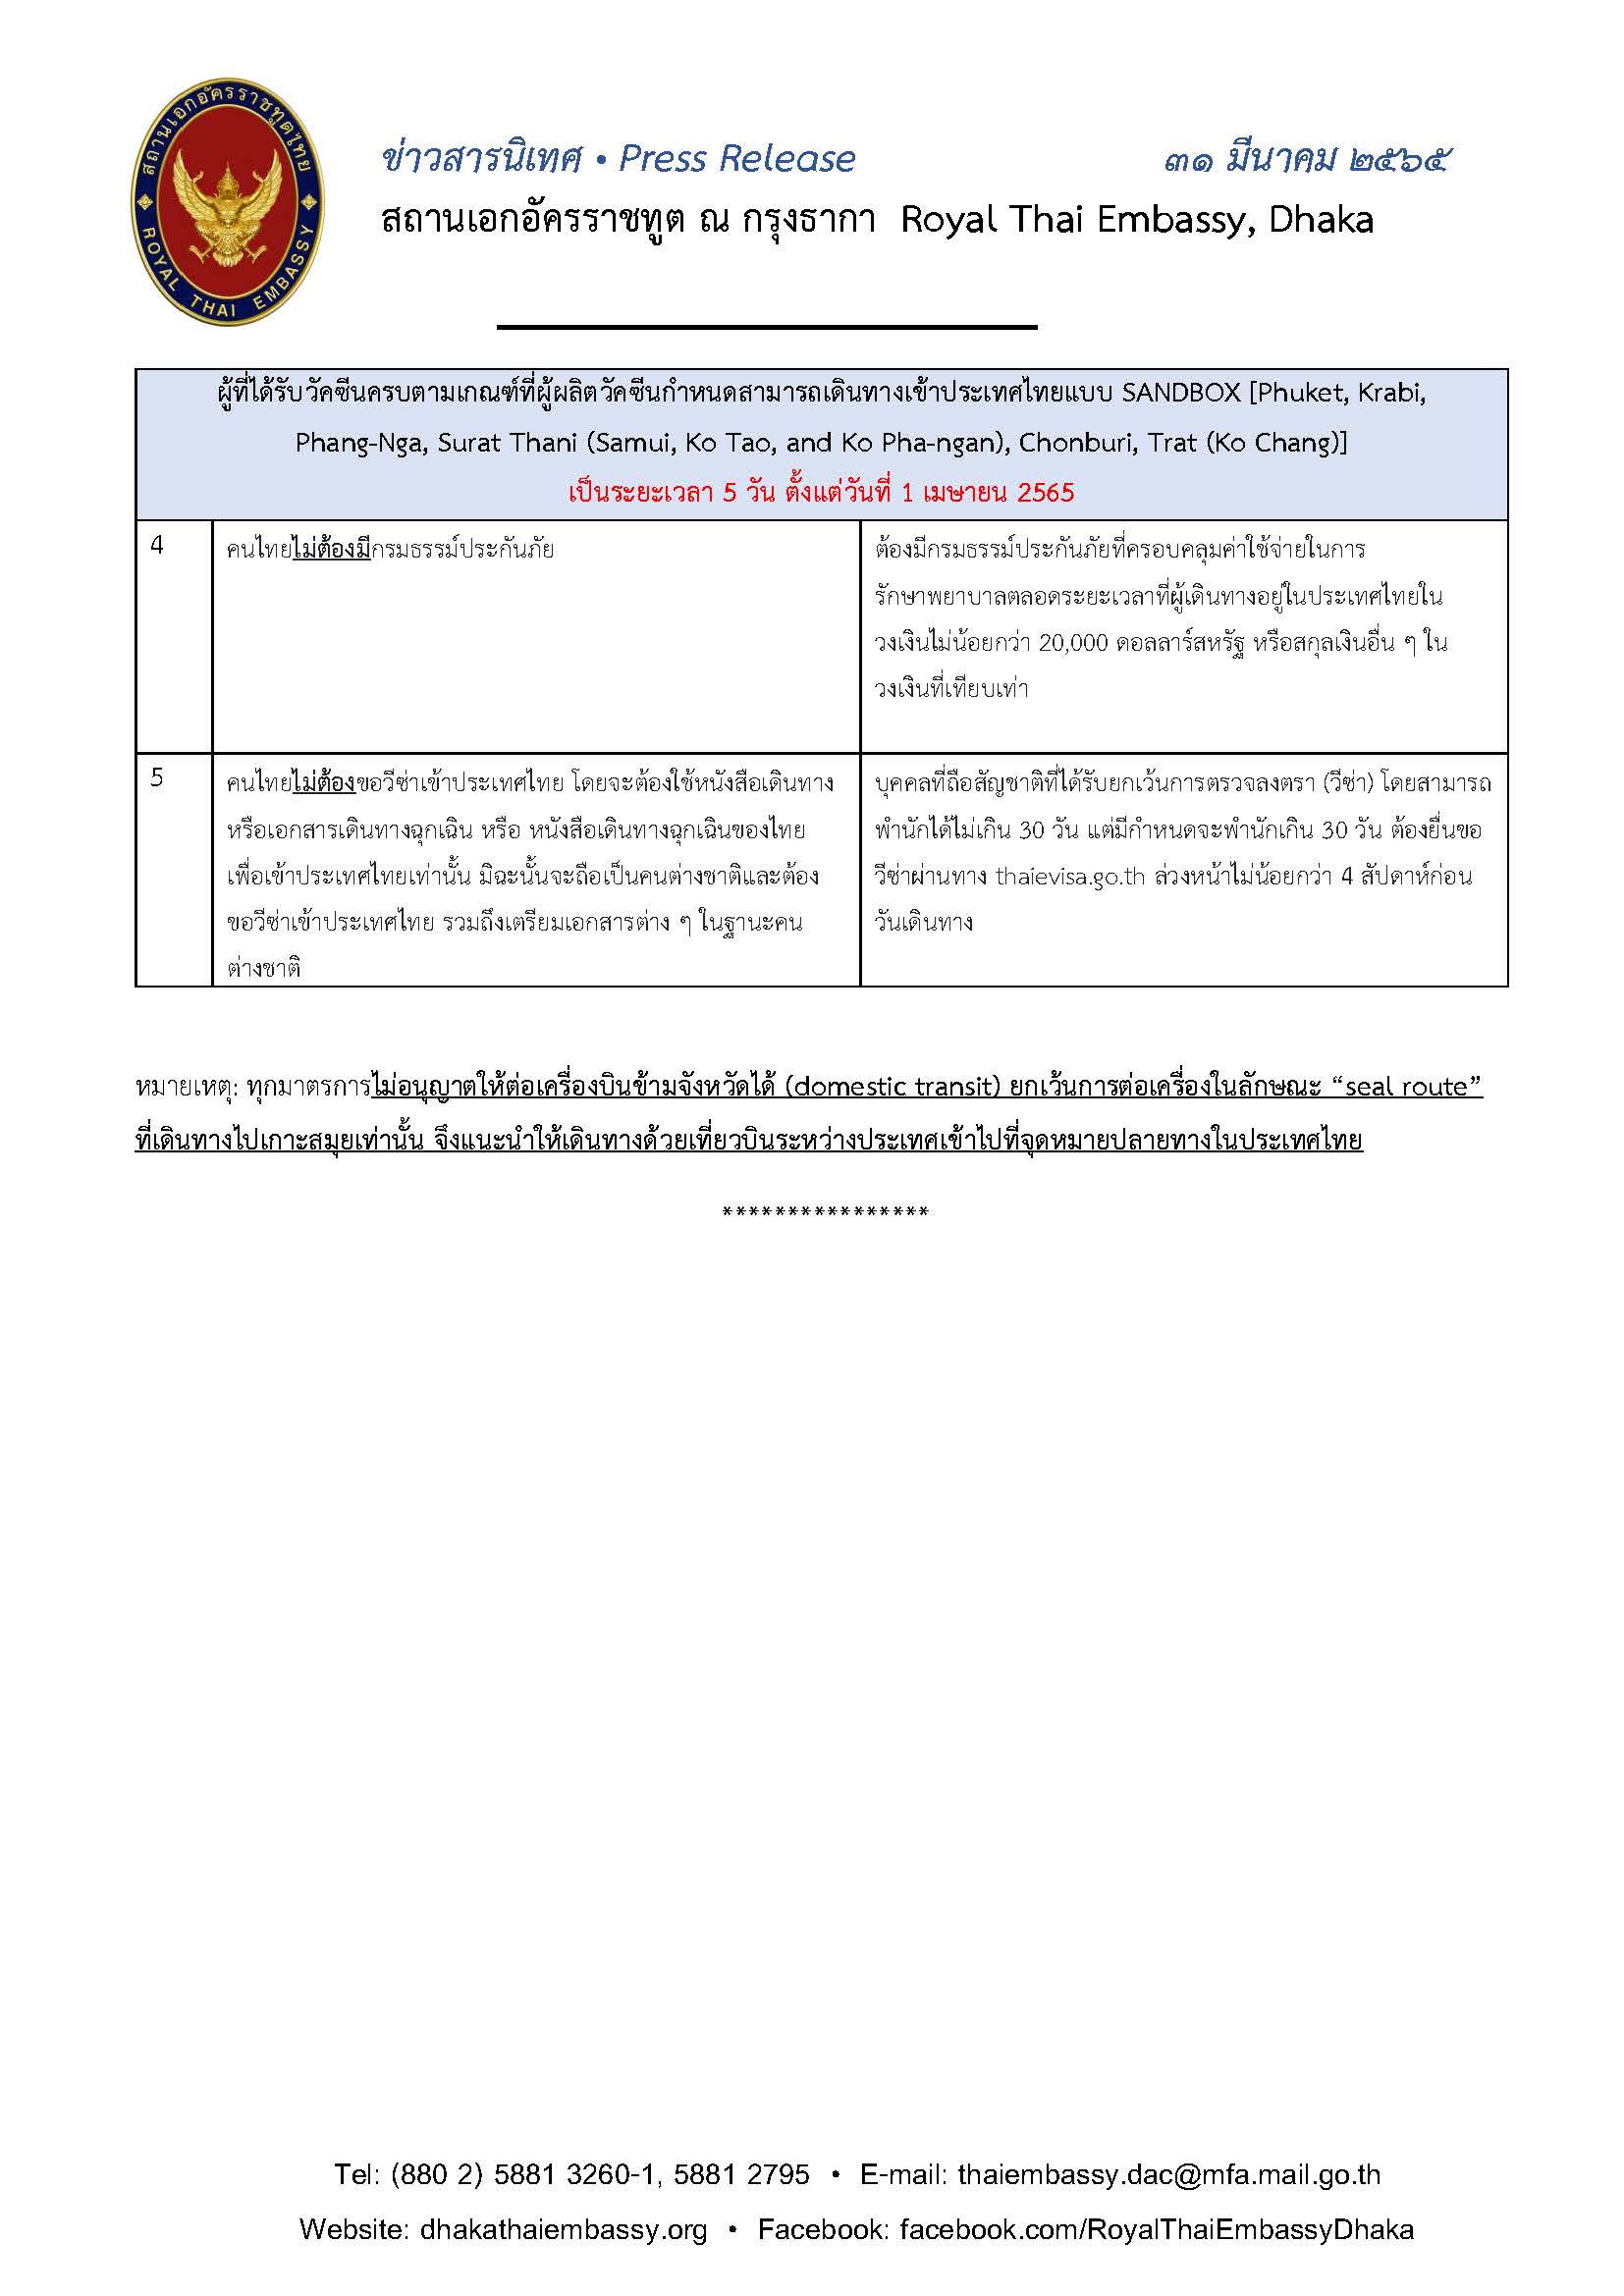 65.03.31_ข่าวสารนิเทศมาตรการเข้าไทย_(ไทย)_Page_4